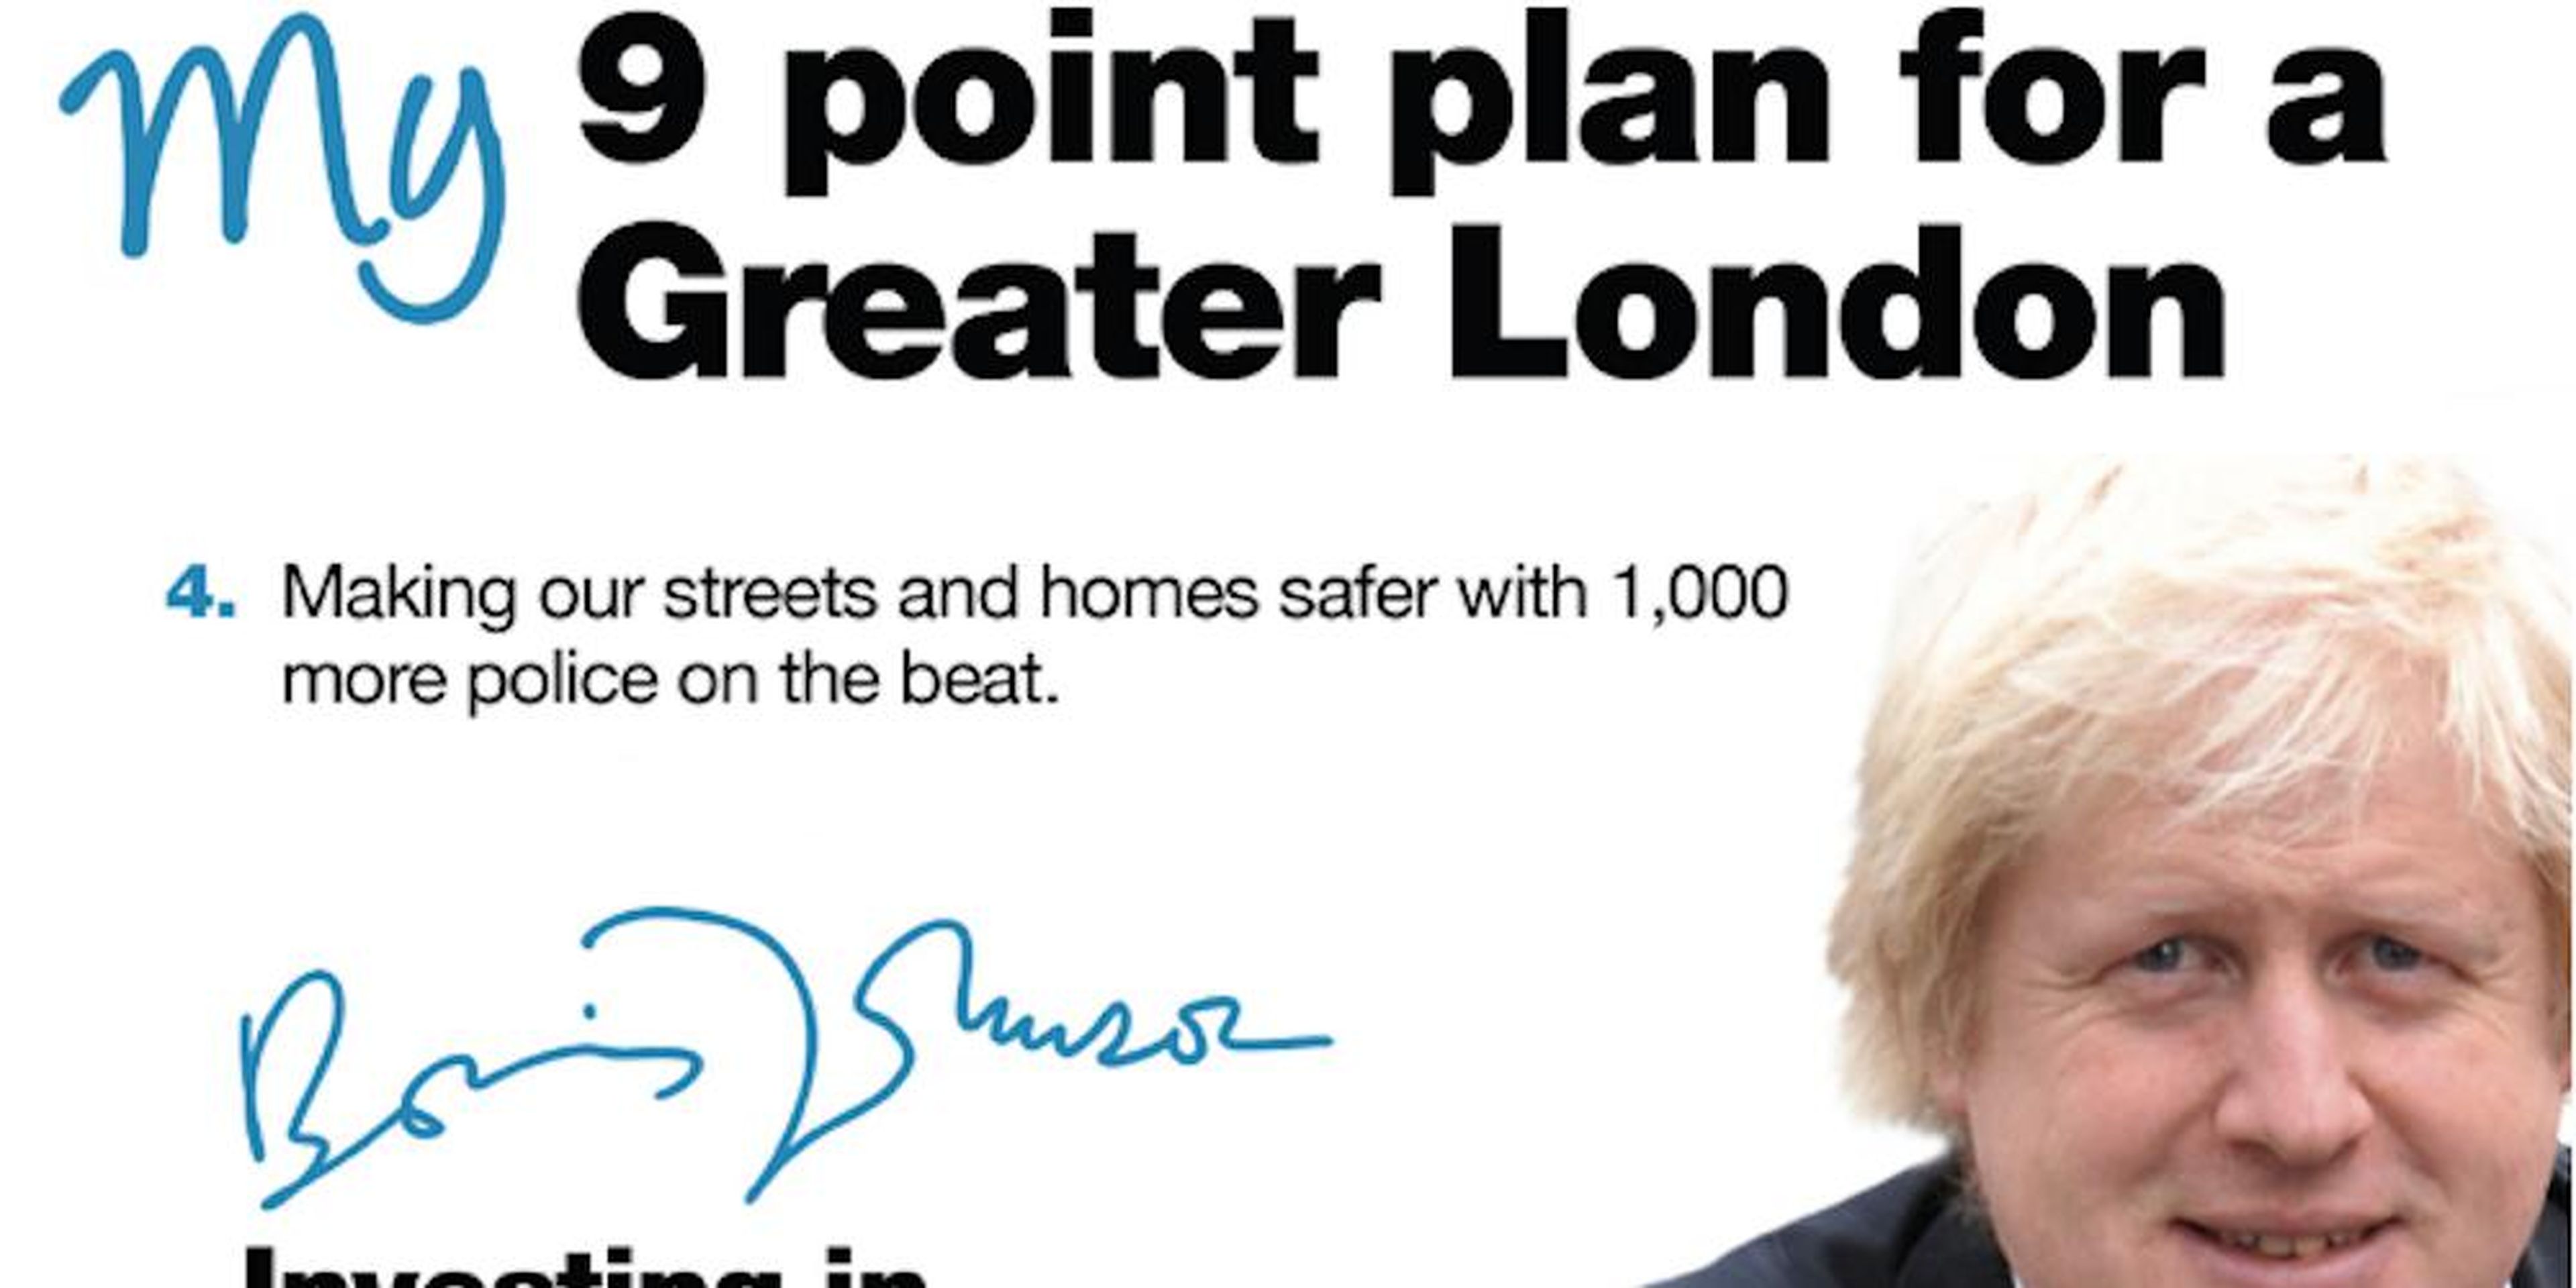 Boris Johnson's 2012 campaign pledge